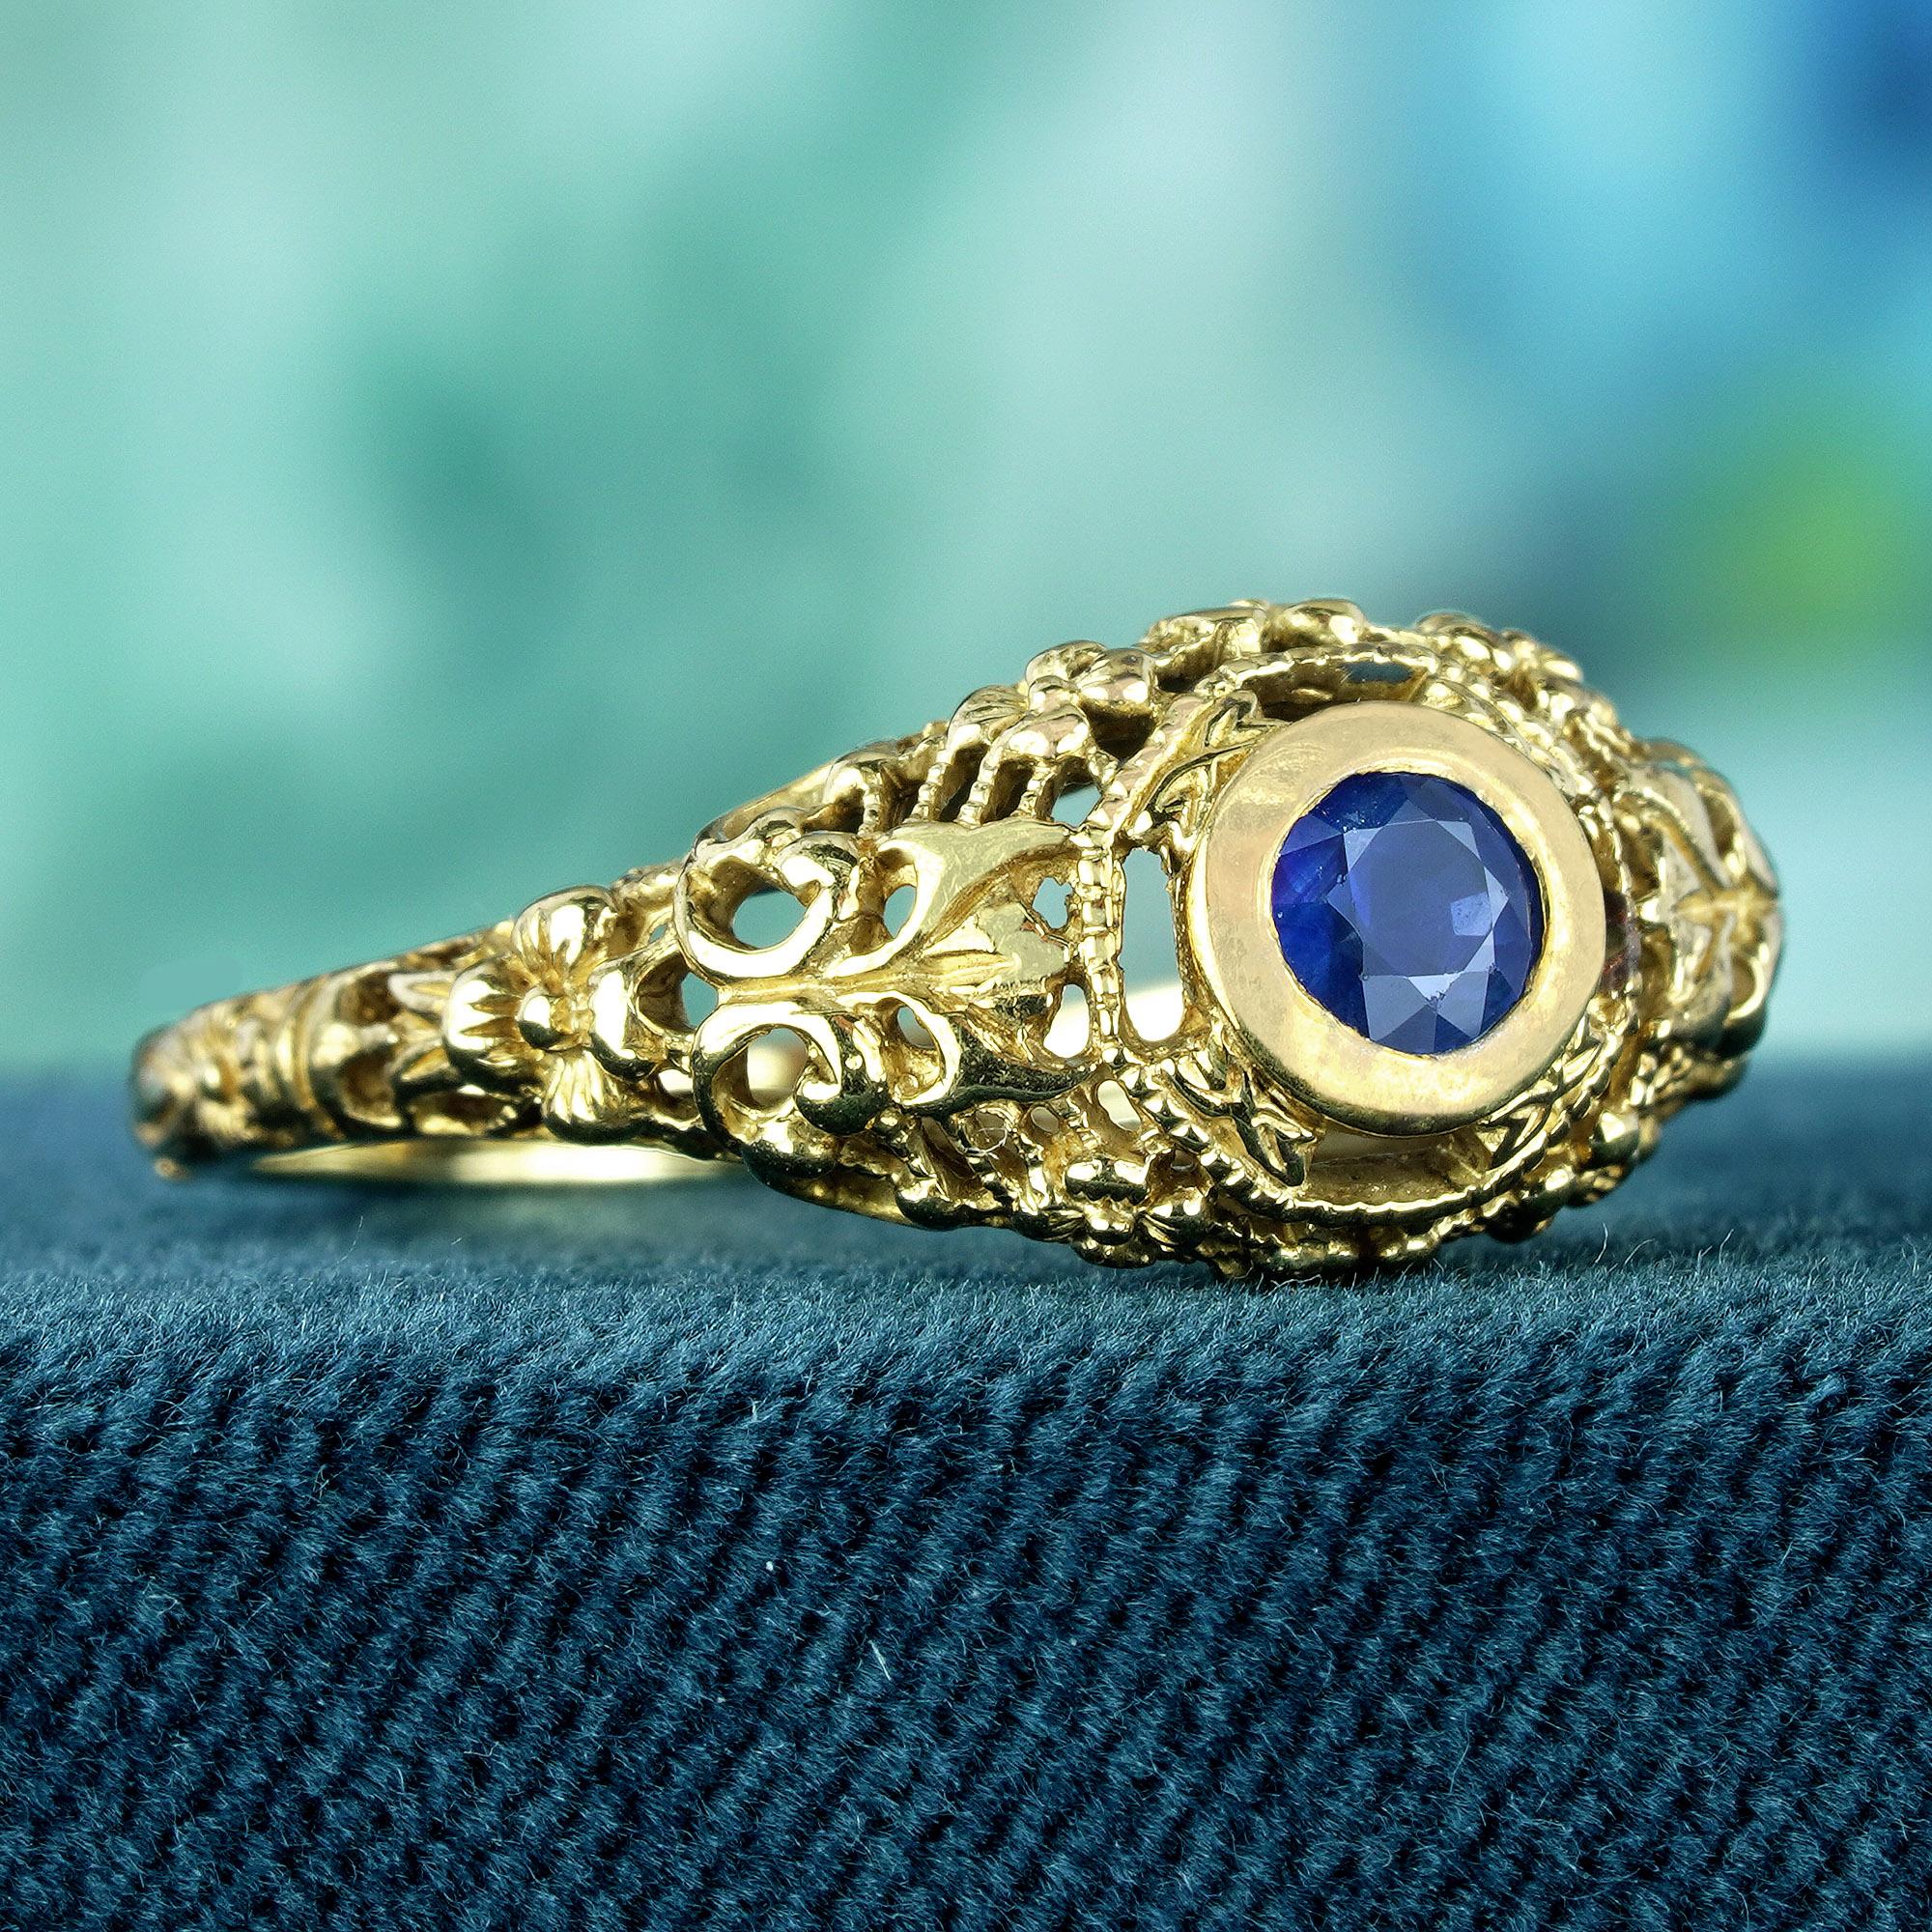 Fachmännisch aus filigranem Gelbgold gefertigt, umschließt dieses bezaubernde Vintage-Design den runden blauen Saphir in seinem Zentrum mit zeitloser Eleganz. Die filigranen durchbrochenen Verzierungen verleihen dem Ring einen Hauch von